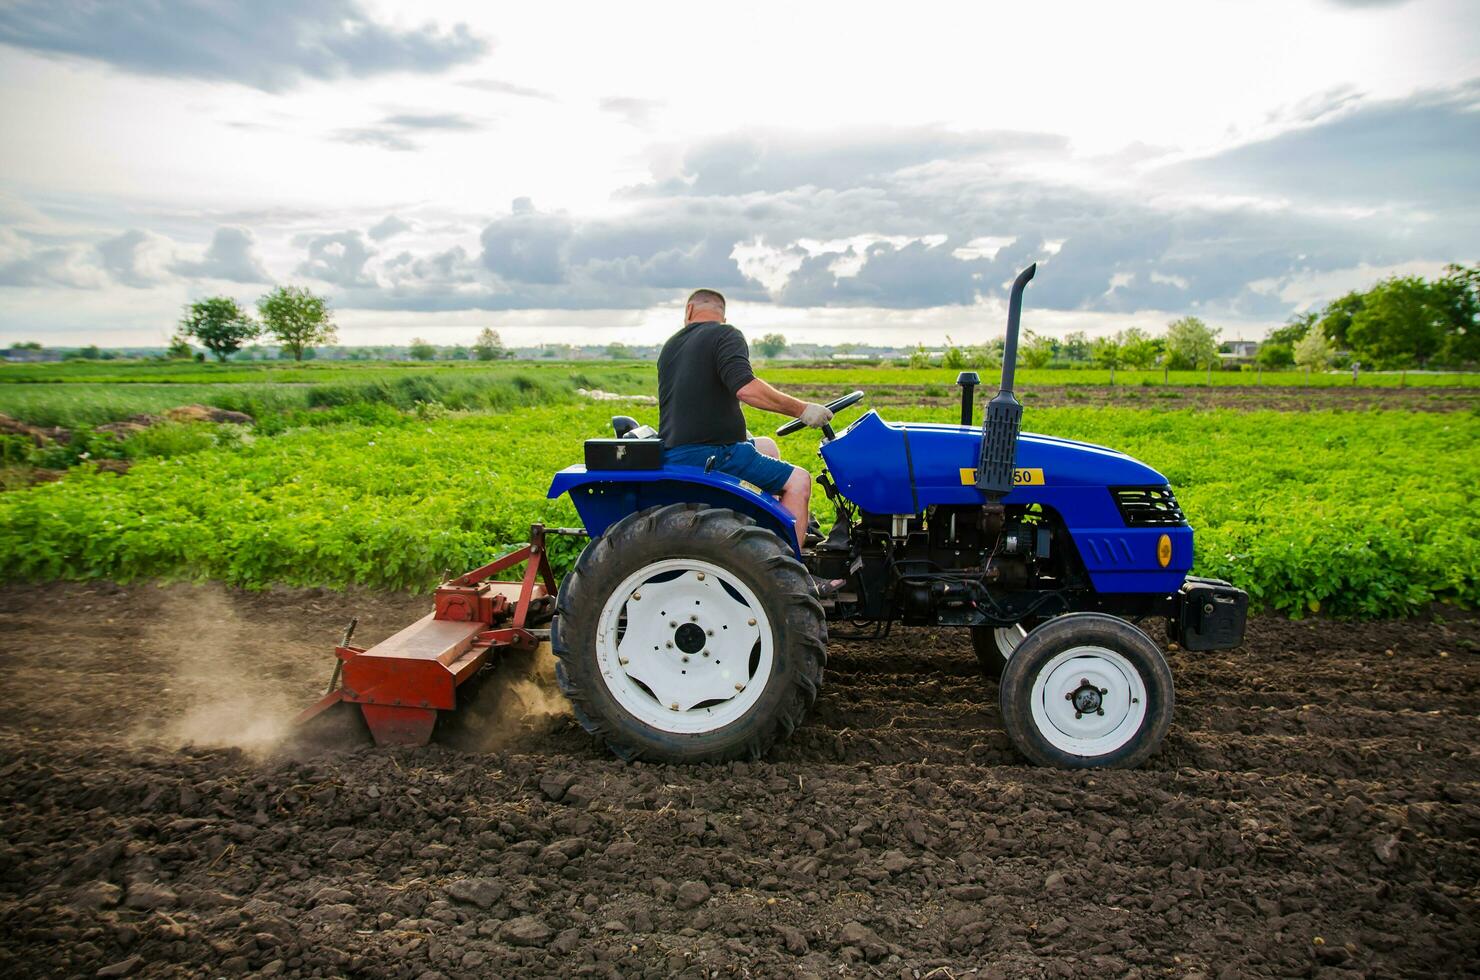 kherson oblast, ukraina - Maj 29, 2021 jordbrukare på en traktor rengör de fält efter skörda. löpning en små jordbruksnäring. bruka arbete. jordbruk. lossning, landa odling. mekanisering i lantbruk. foto